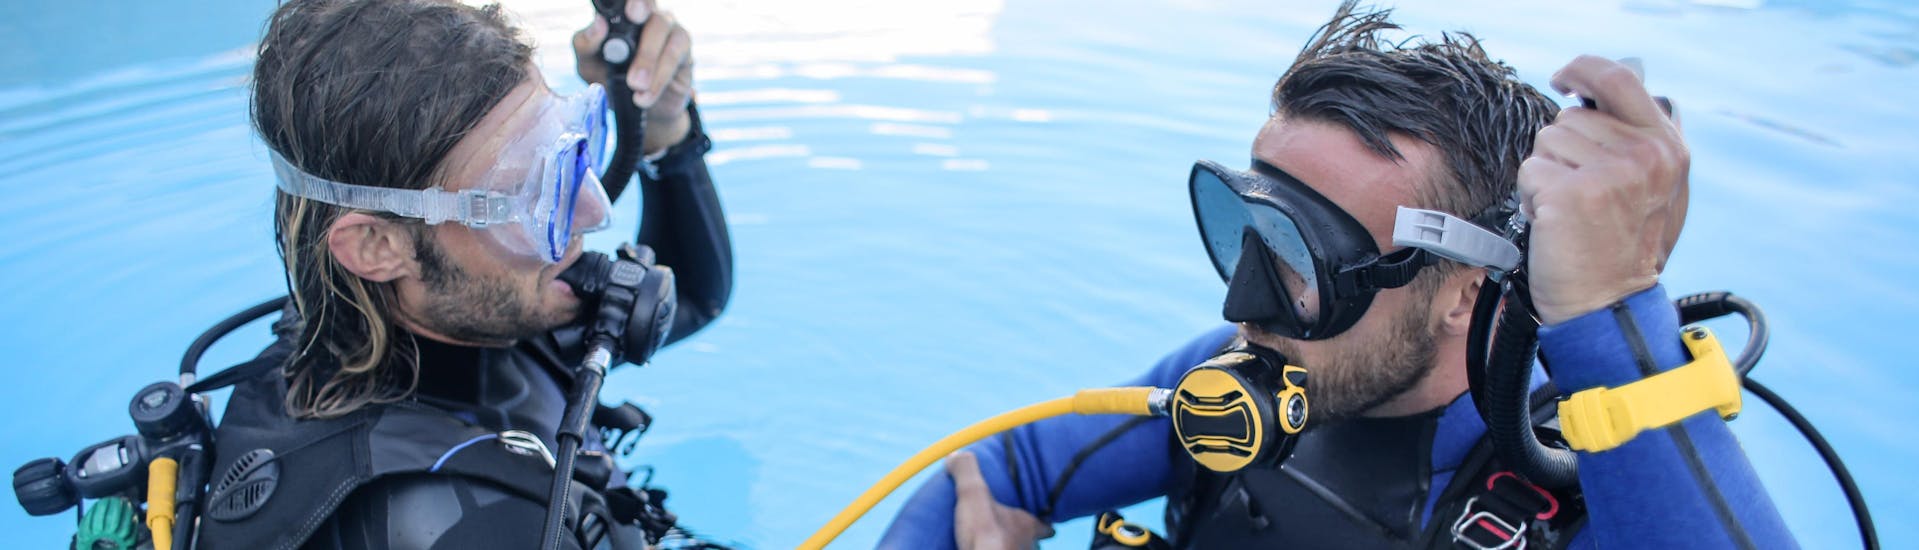 Durante un bautismo de buceo, un instructor de buceo enseña a un alumno a utilizar su equipo de buceo dentro de una piscina.